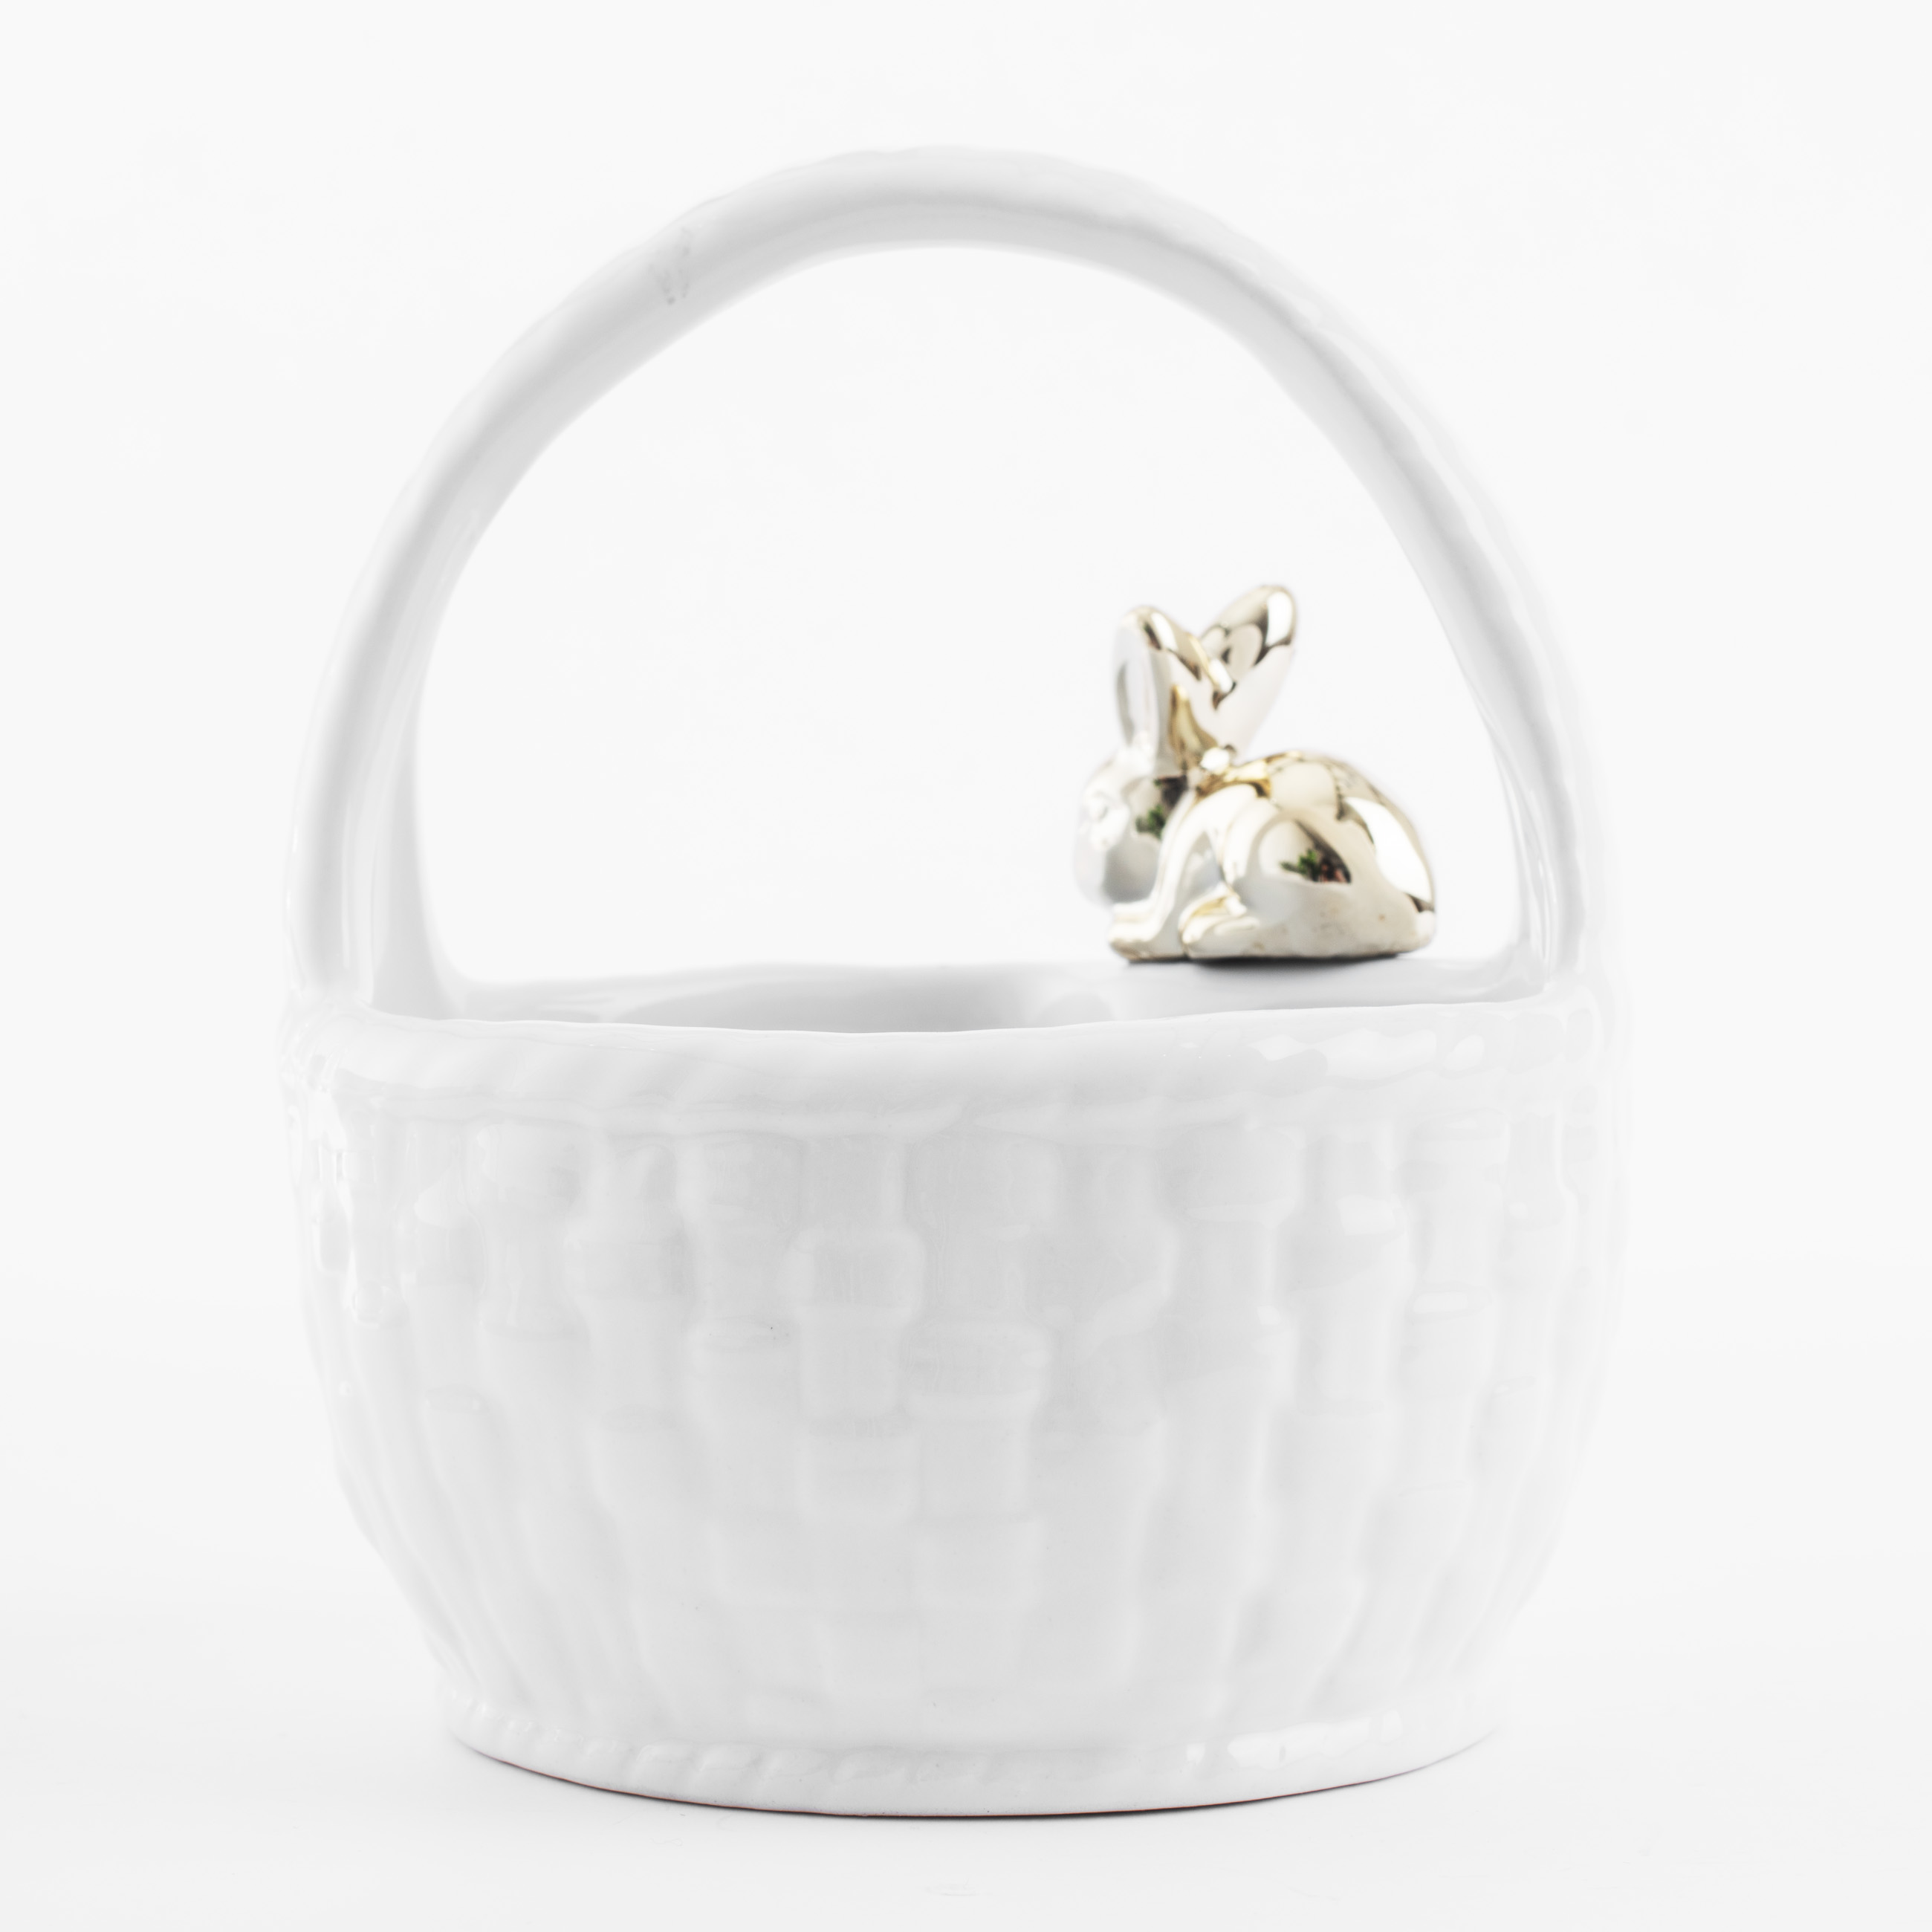 Конфетница, 12х14 см, с ручкой, керамика, белая, Кролик на корзине, Easter gold изображение № 3